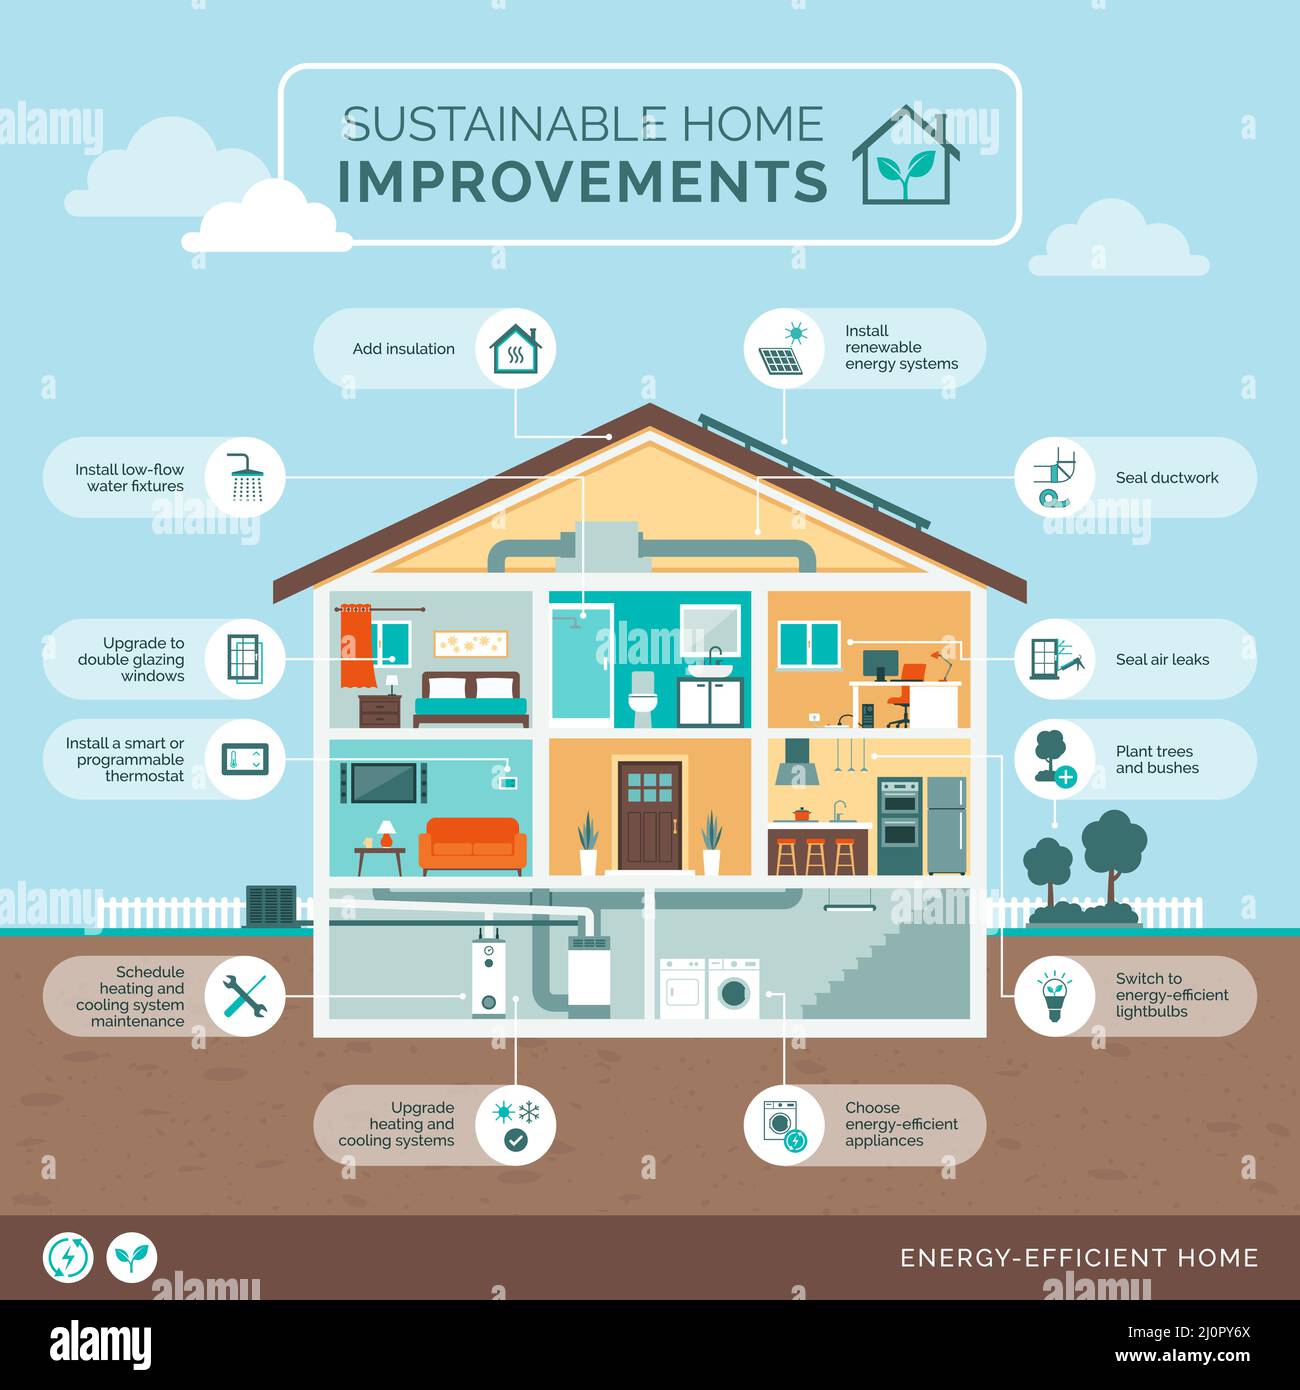 Miglioramenti sostenibili della casa: Aggiornamenti ecocompatibili per la tua casa, infografica della sezione casa con icone Illustrazione Vettoriale